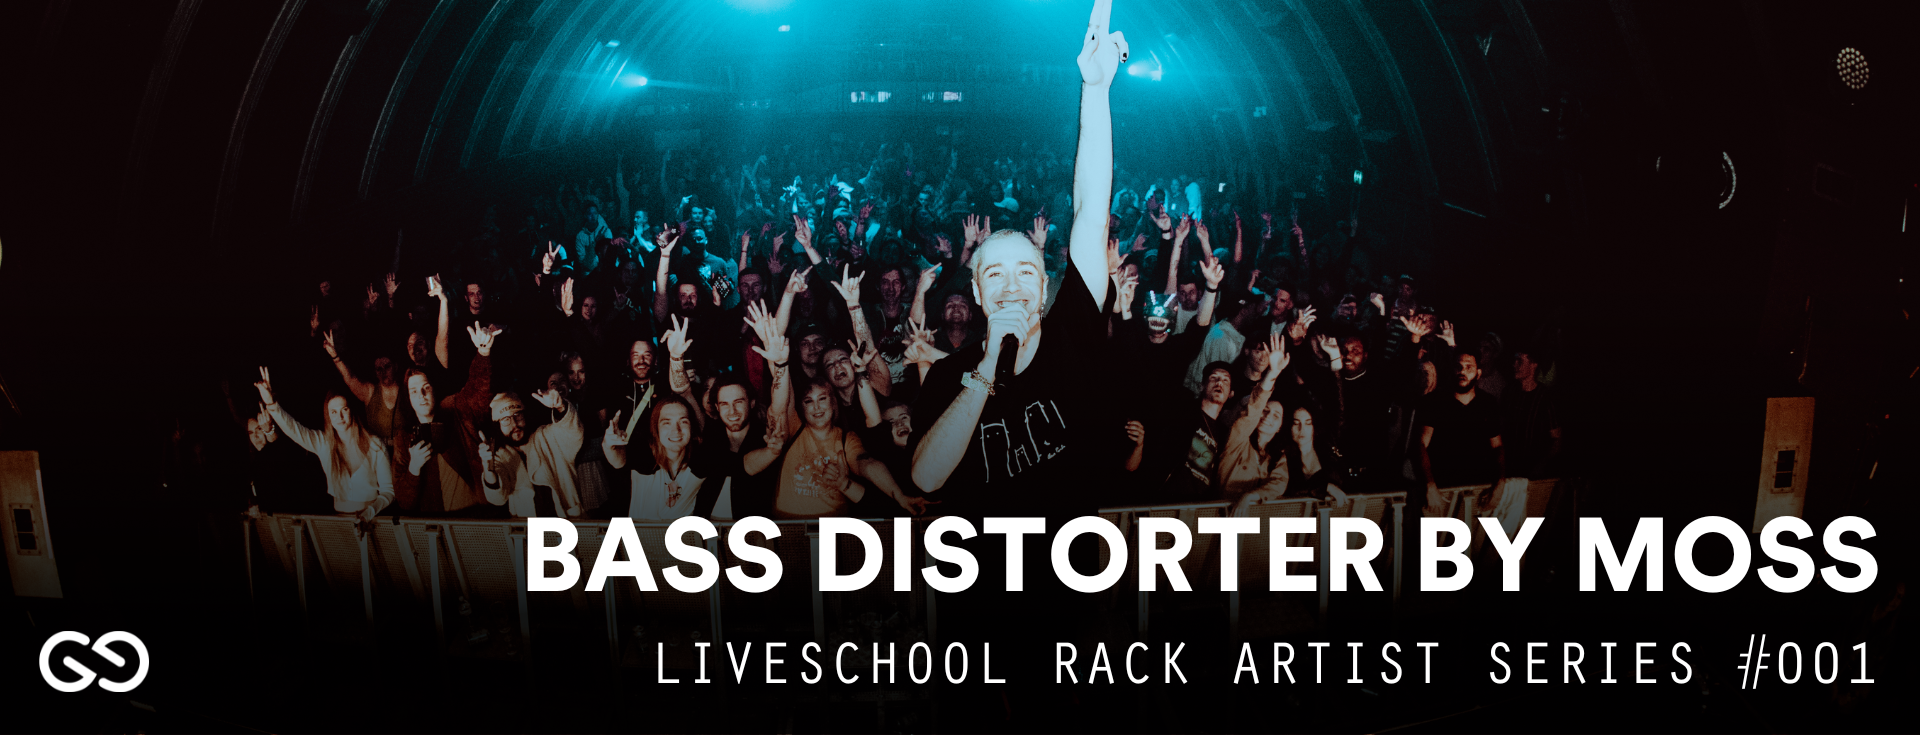 Liveschool Artist Rack Series | Moss | Bass Distorter #001